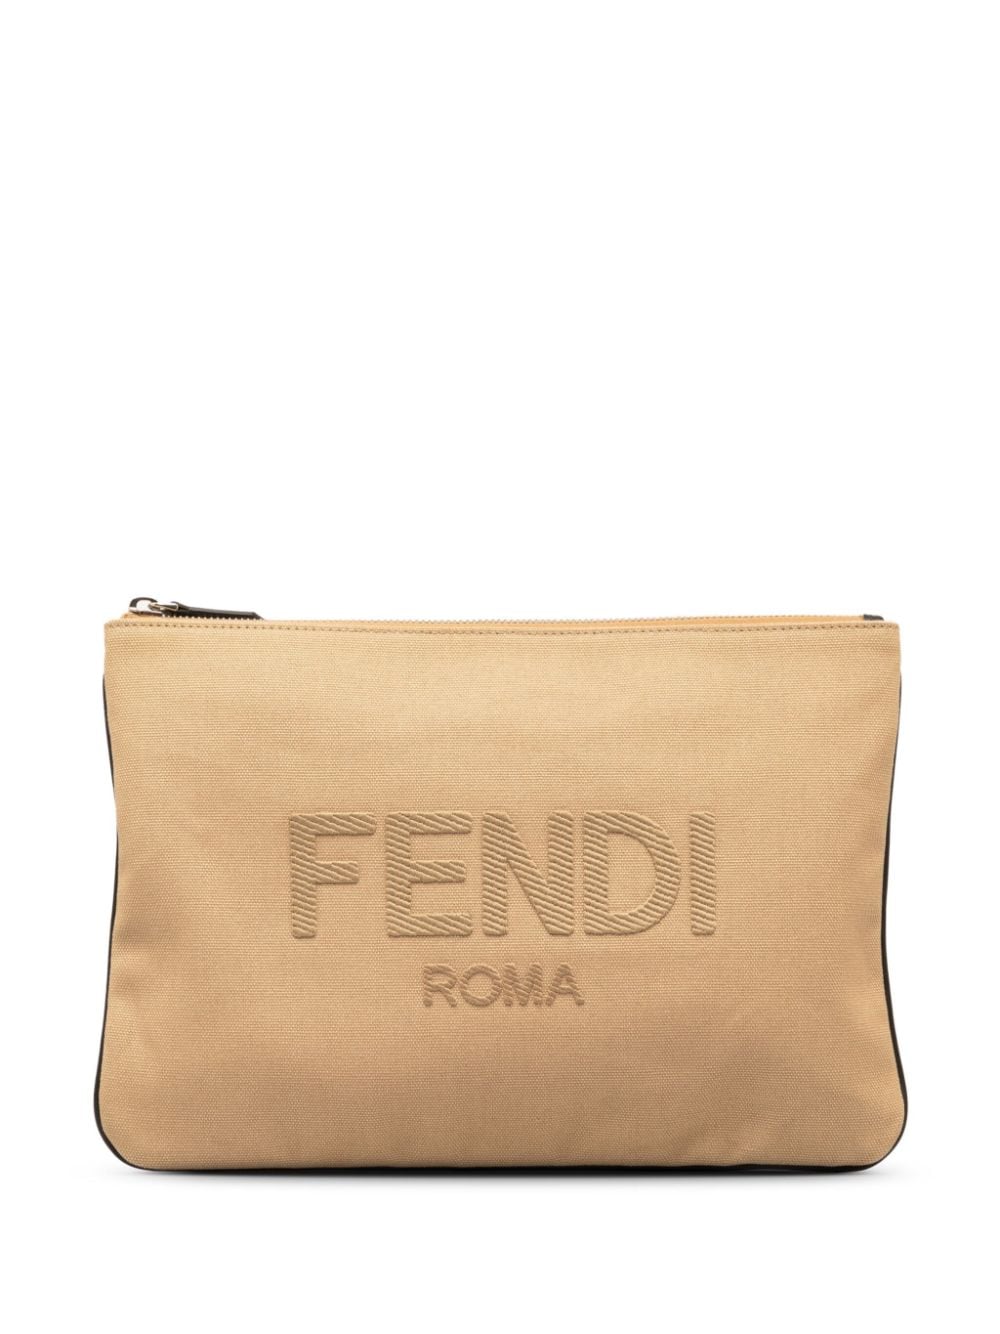 2000-2010 Roma clutch bag